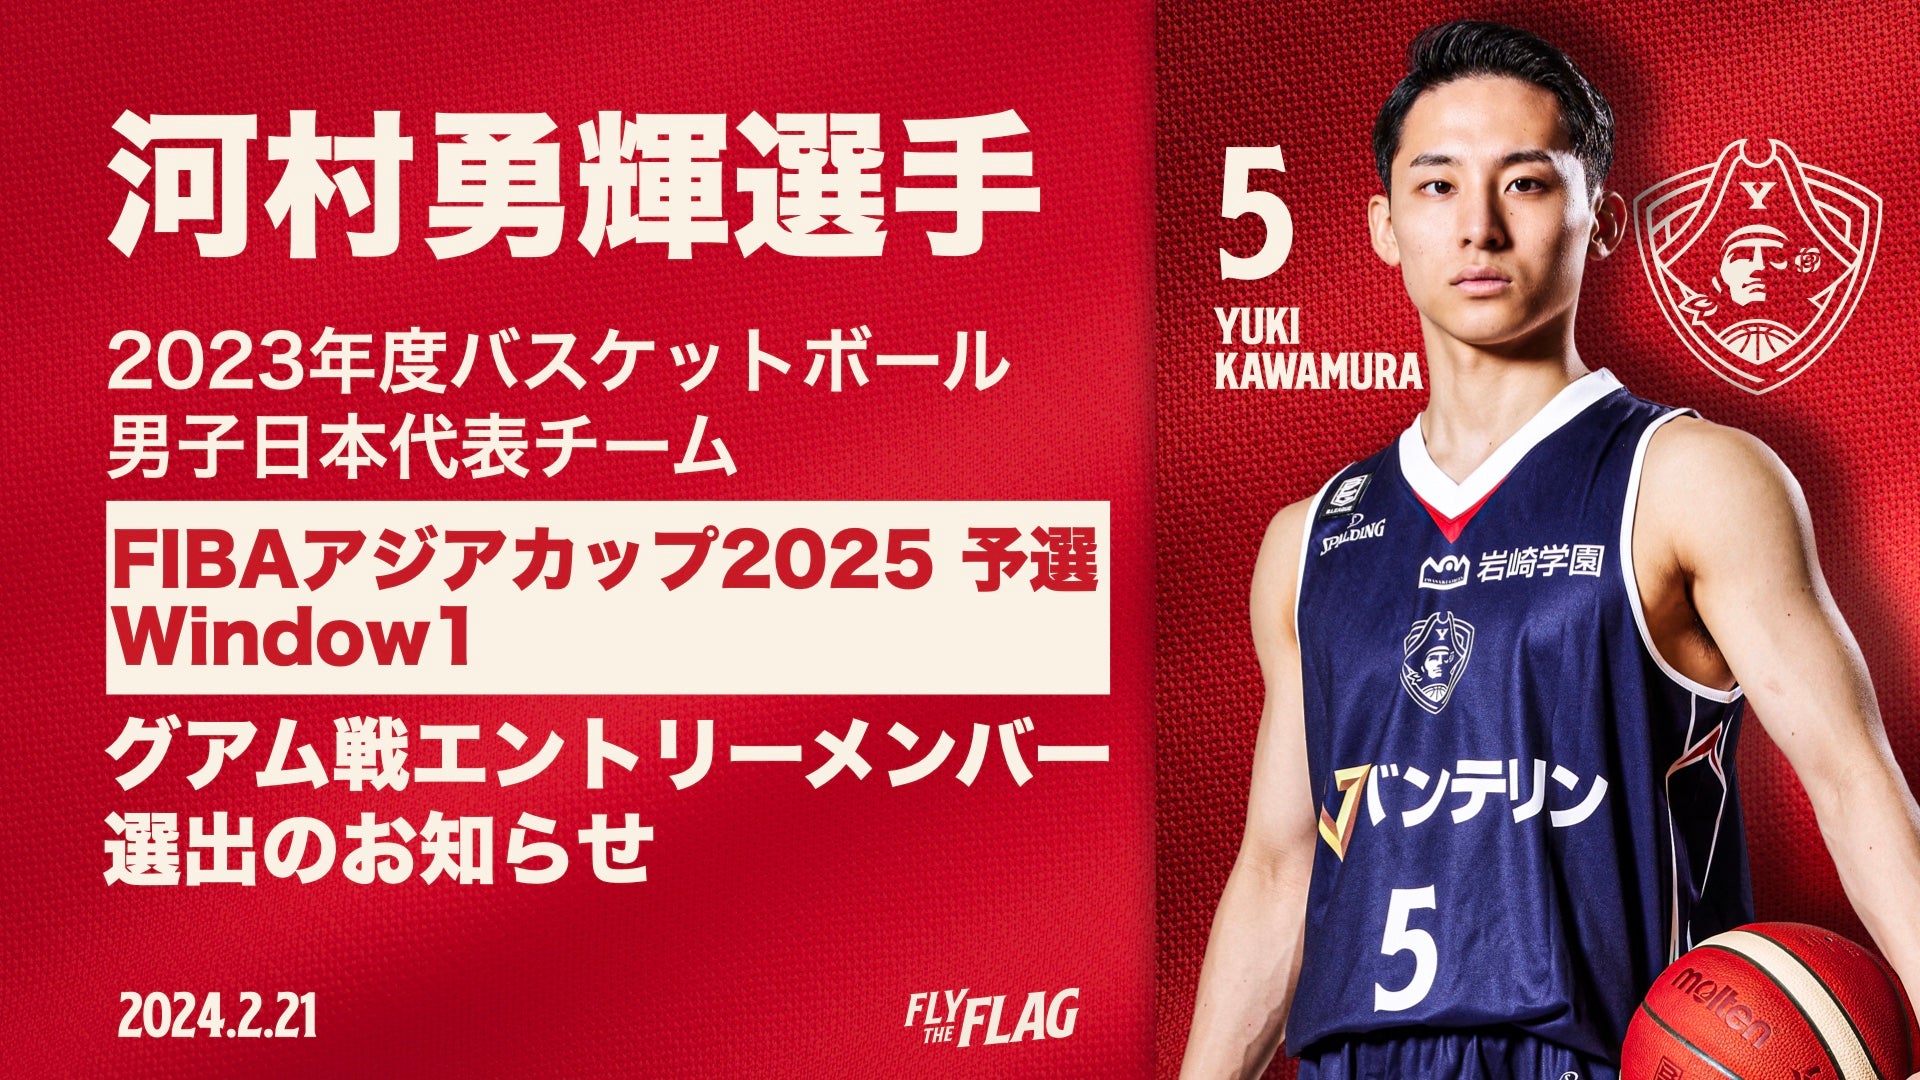 河村勇輝選手「FIBAアジアカップ2025予選」Window1 グアム戦 男子日本代表チーム エントリーメンバー選出のお知らせ